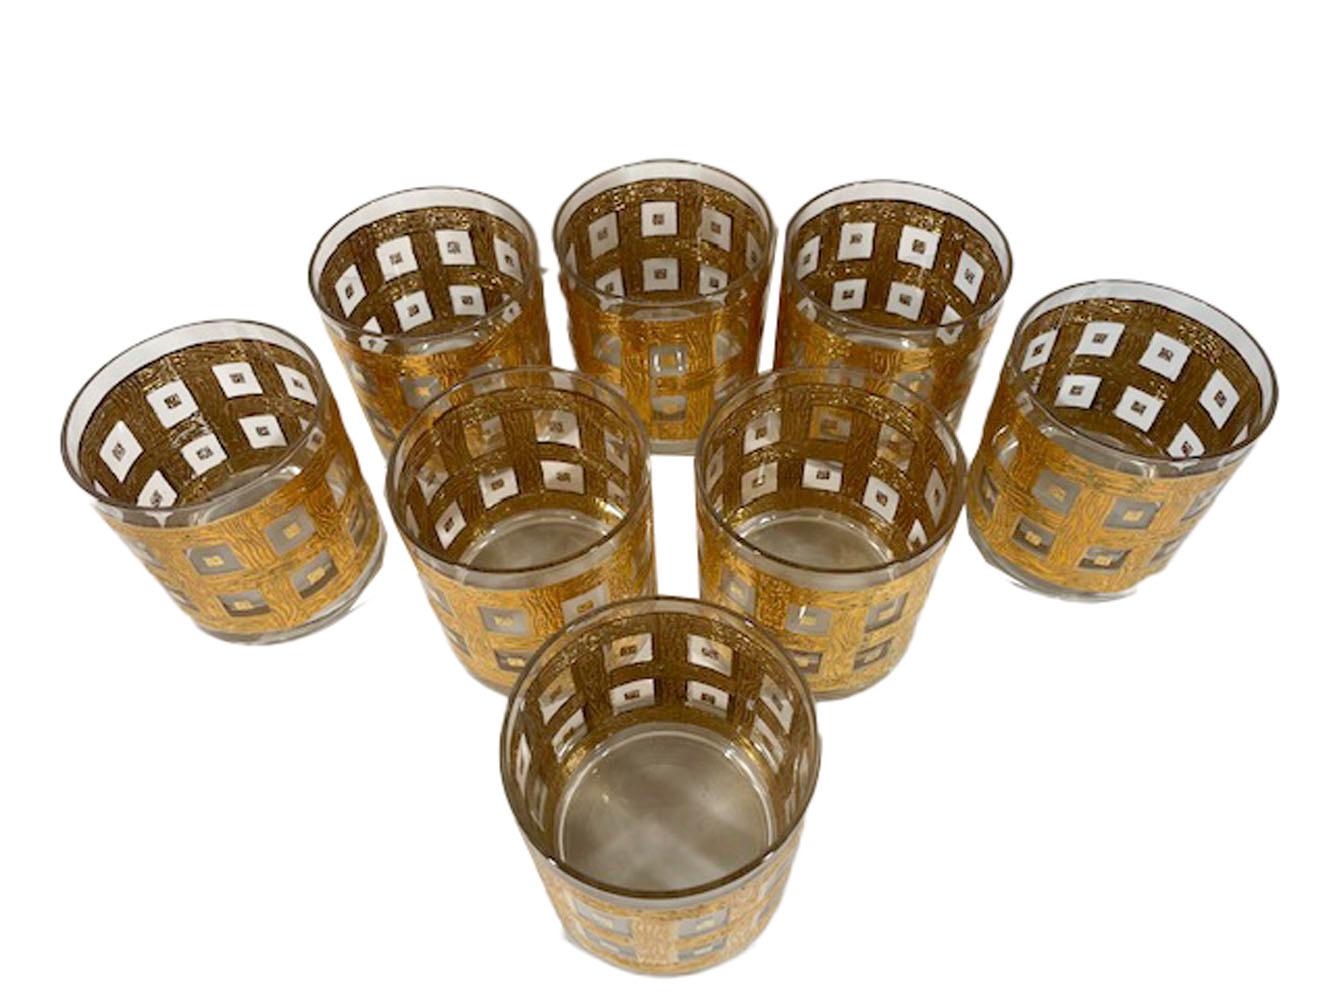 Huit verres à pied Georges Briard à décor en relief en or 22 carats d'un treillis tissé de grains de bois formant une double rangée d'ouvertures carrées, chacune avec un carré central en or.